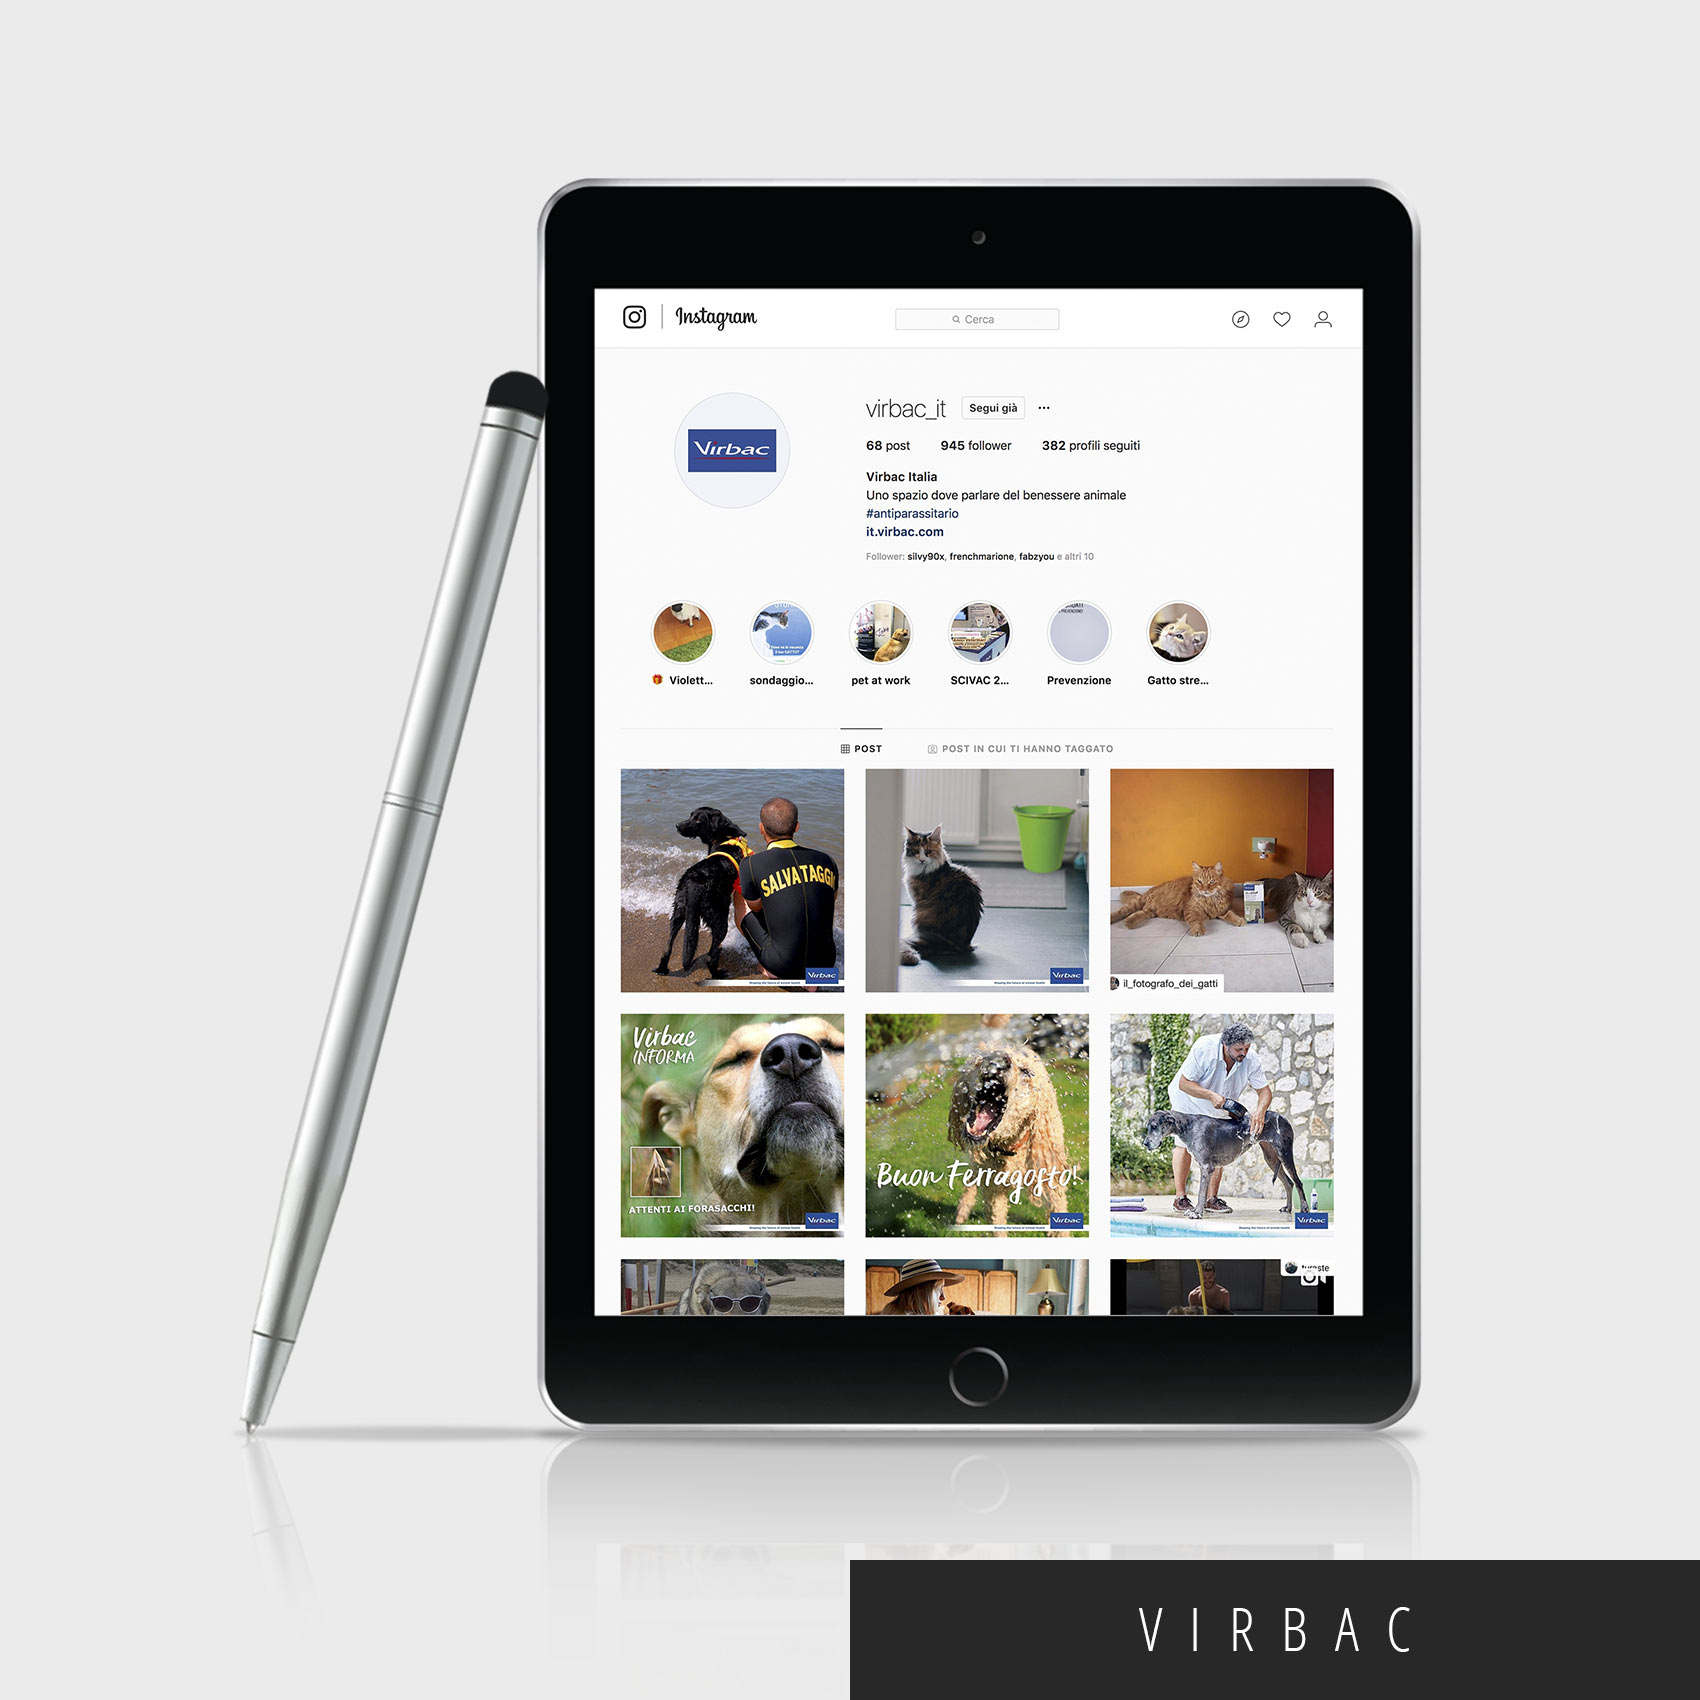 gestione profilo instagram: tablet con immagini esempio